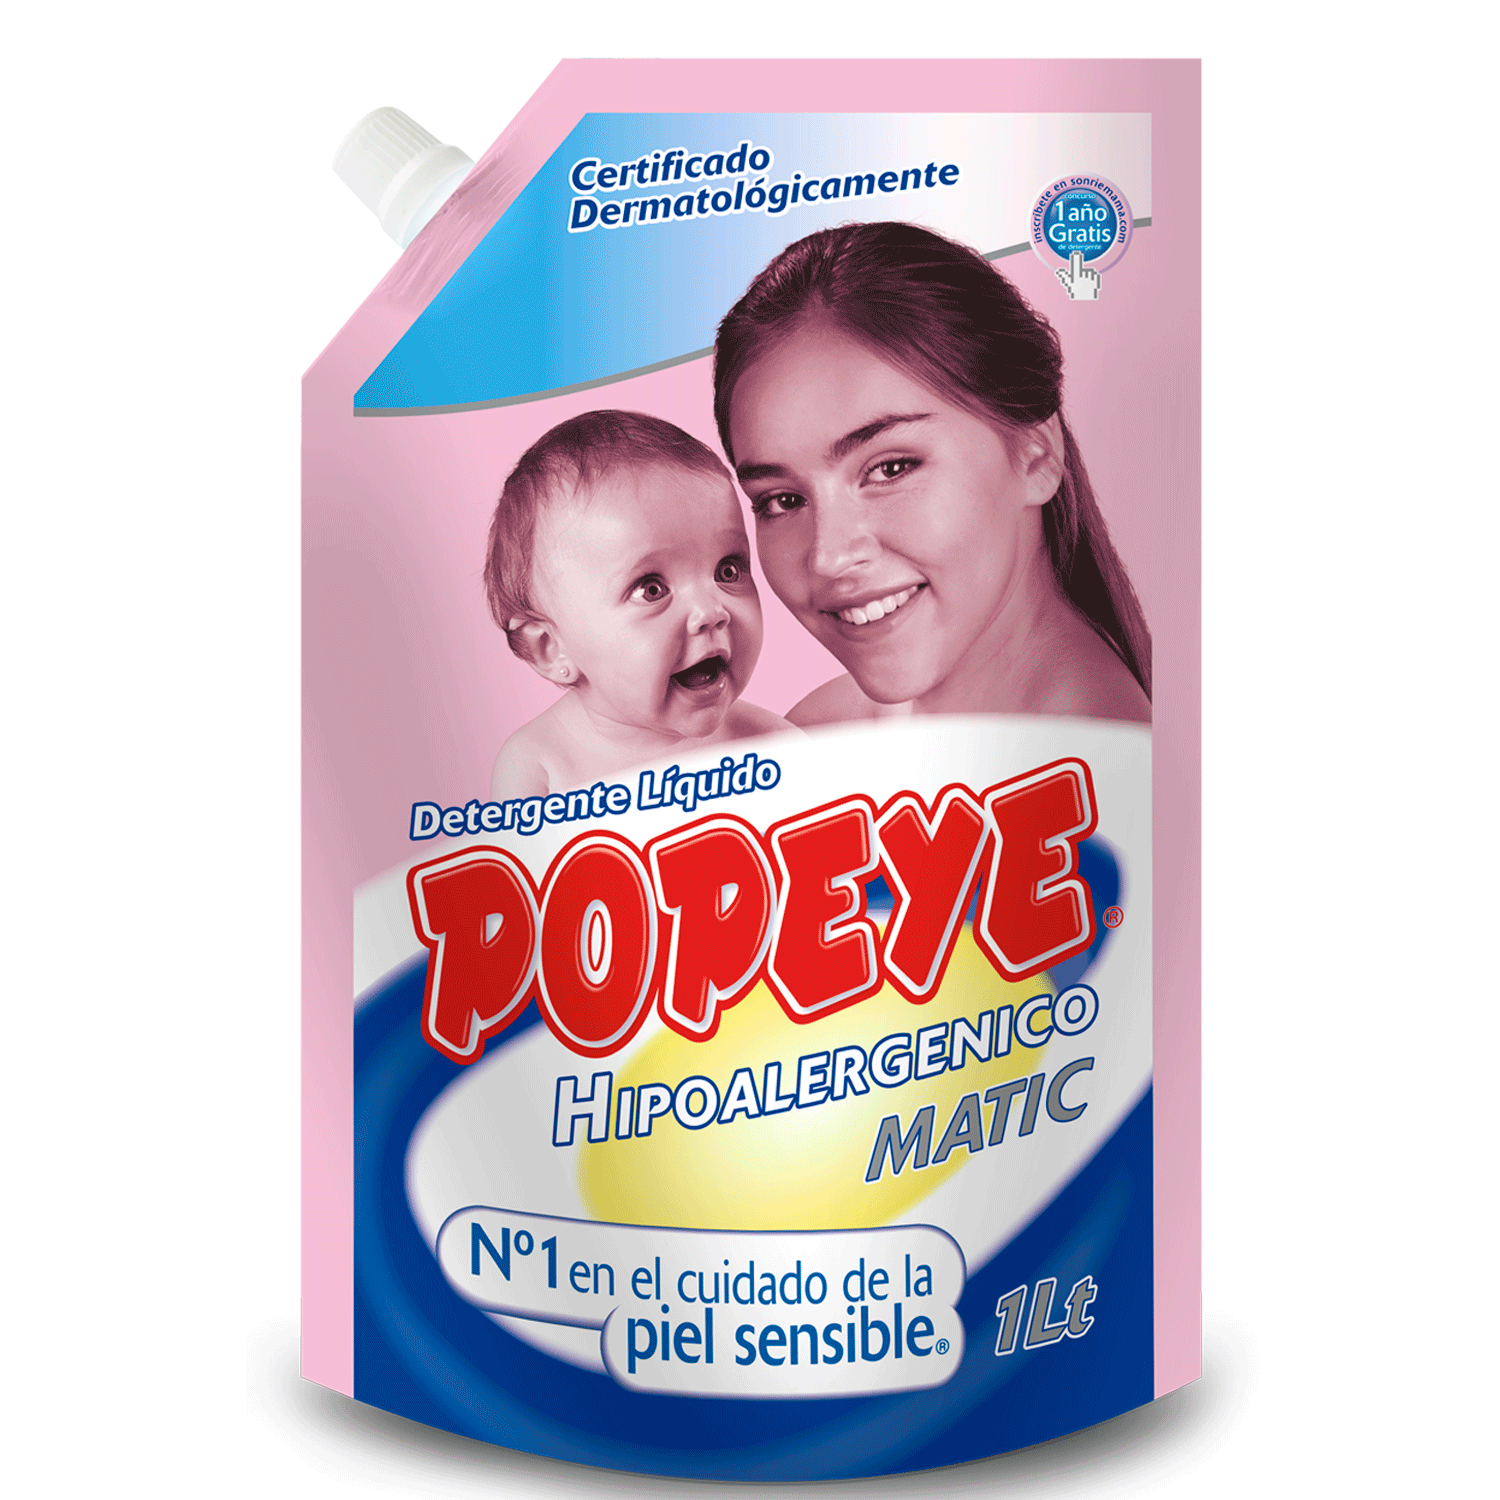 Detergente Liquido Popeye Hipoalergenico 1L